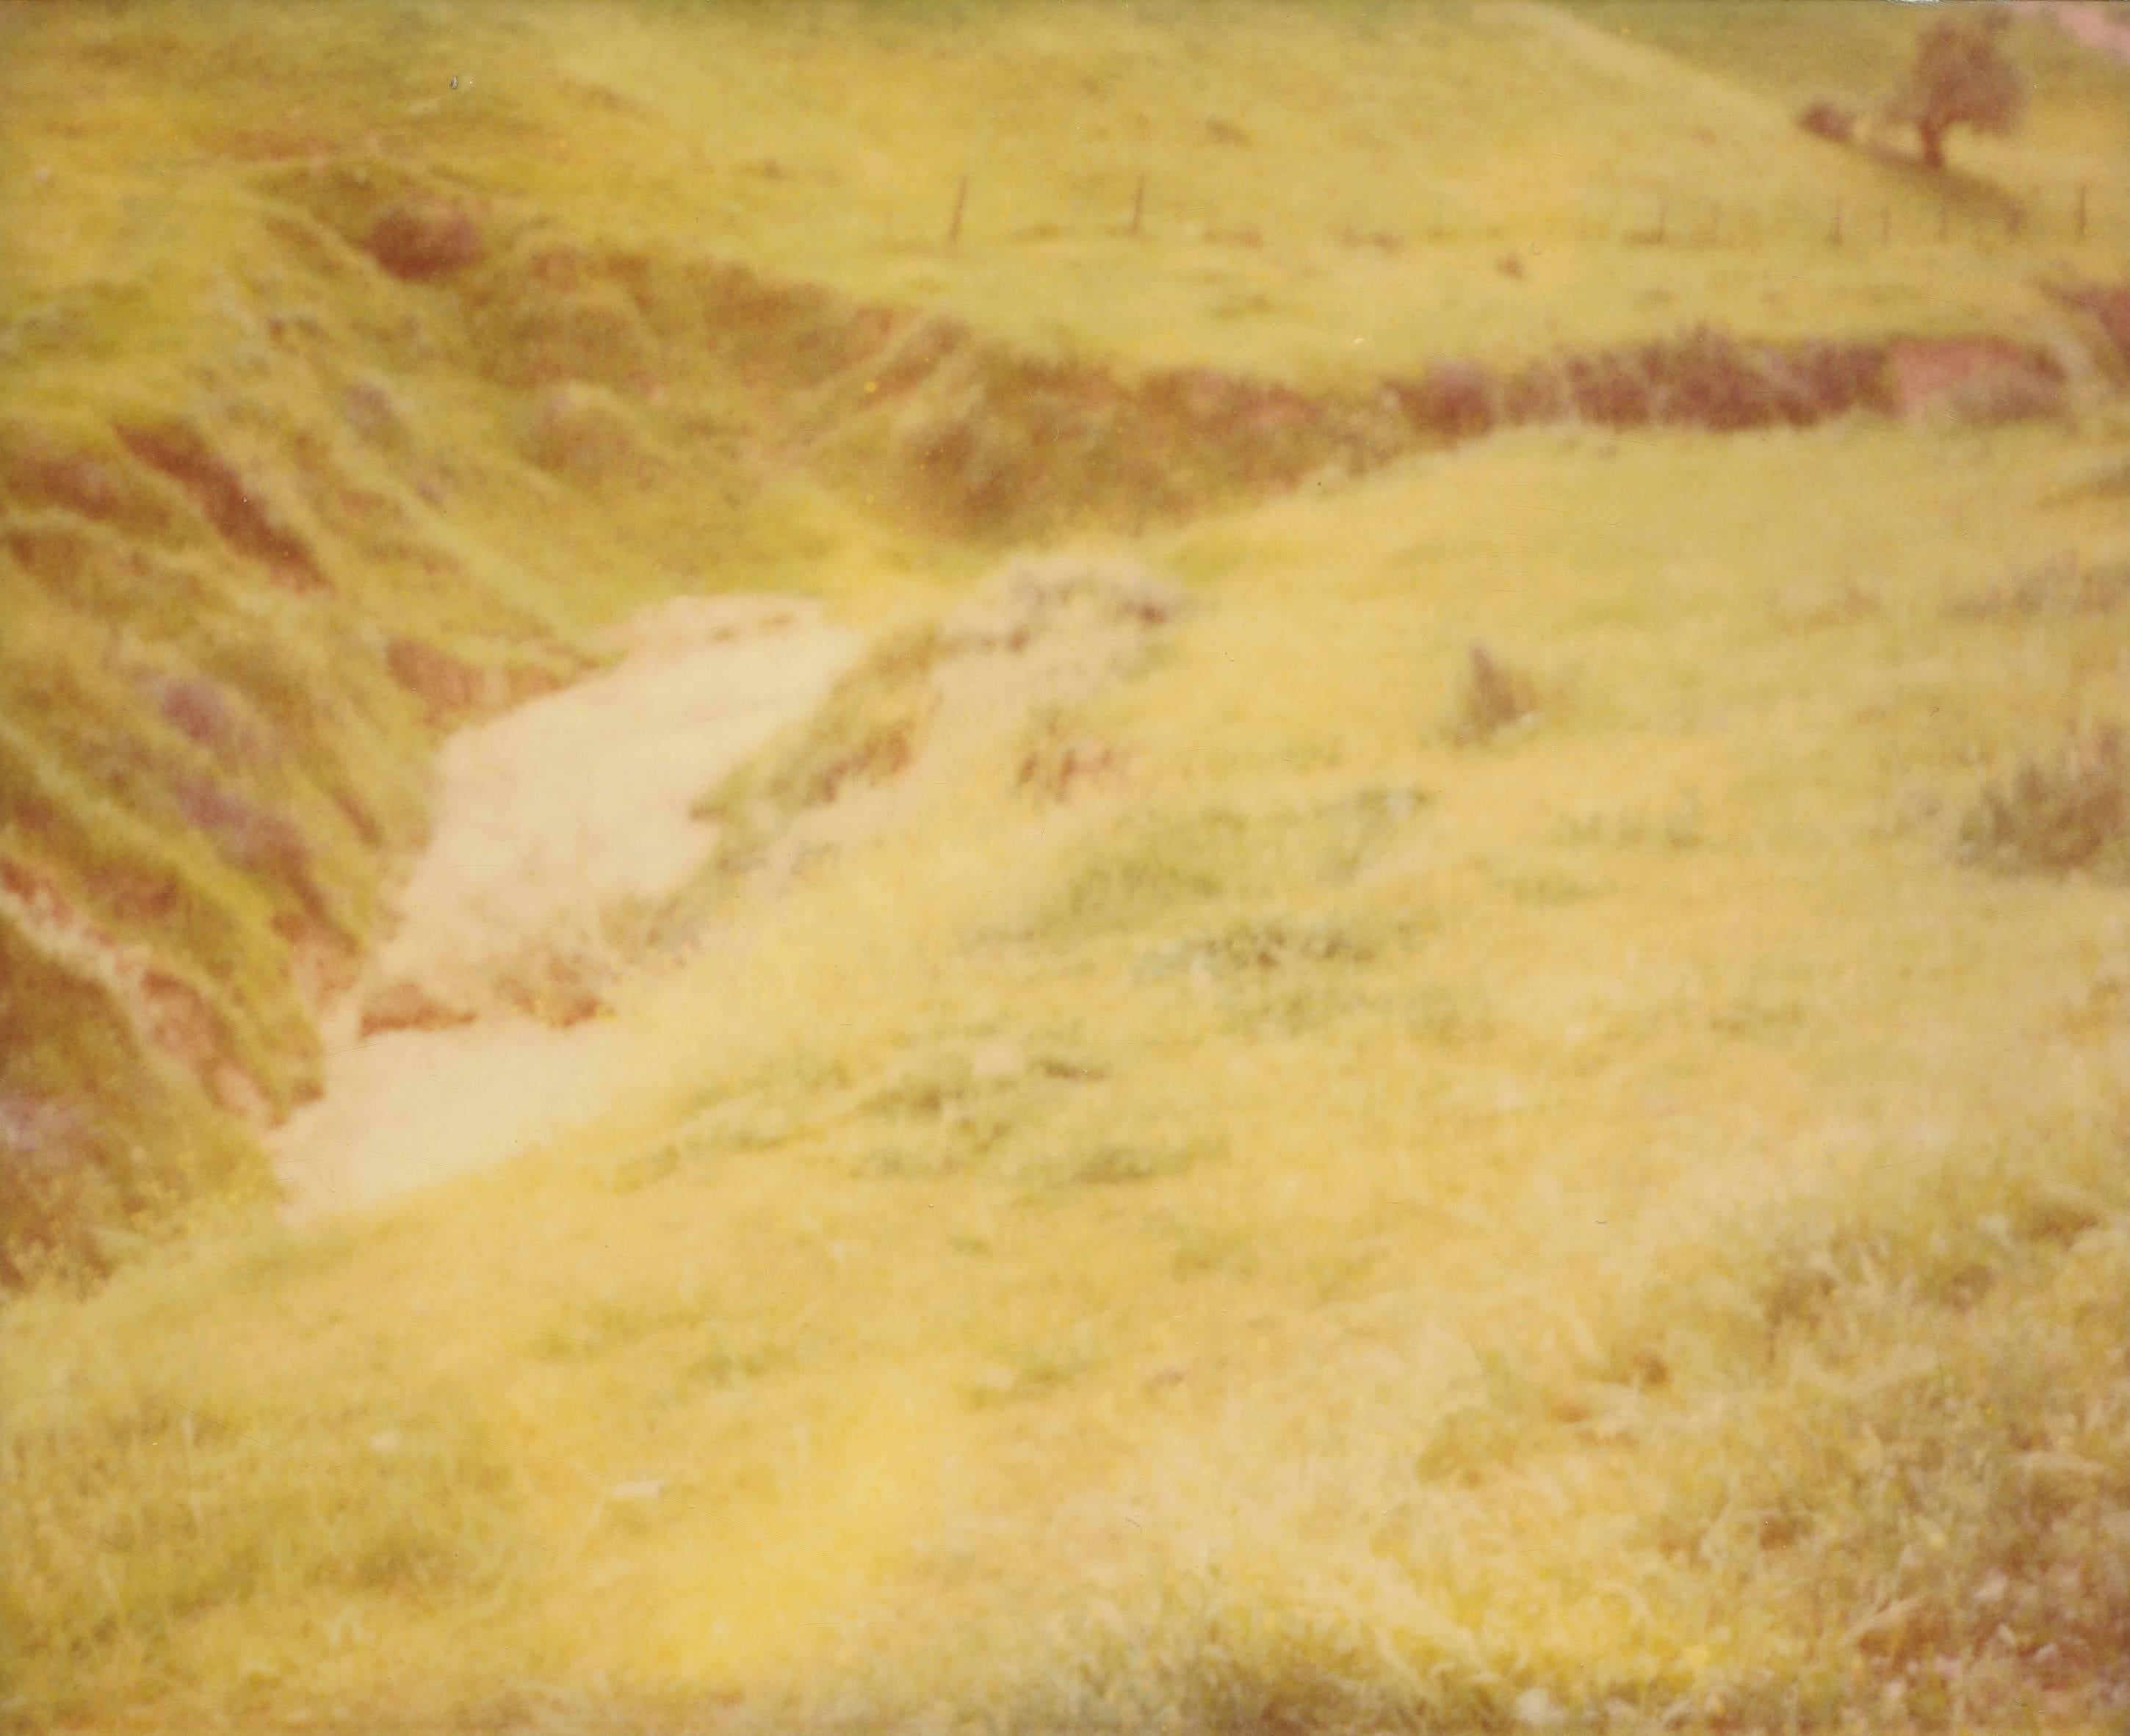 Stefanie Schneider Color Photograph - Green Field - Jean Baptist's Dream no. 3 - Sidewinder